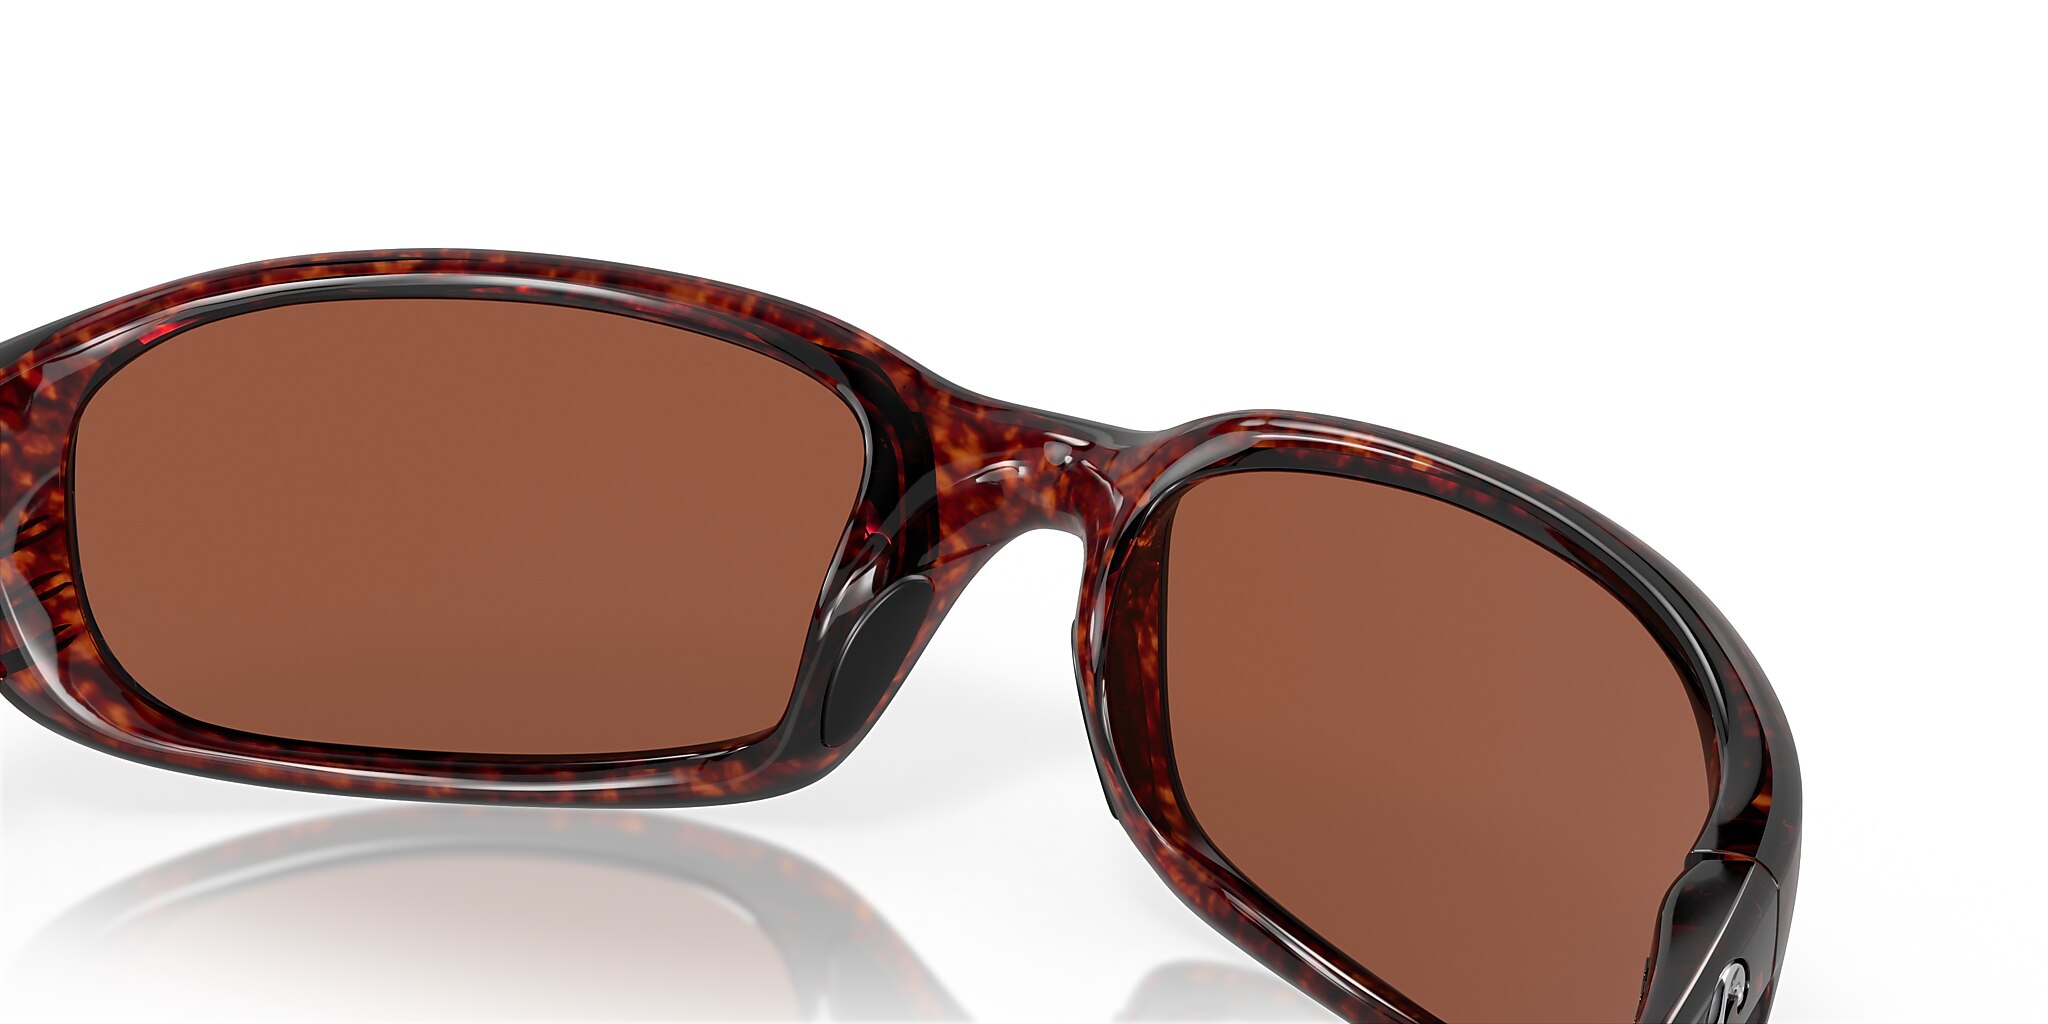 Brine Polarized Sunglasses in Copper | Costa Del Mar®